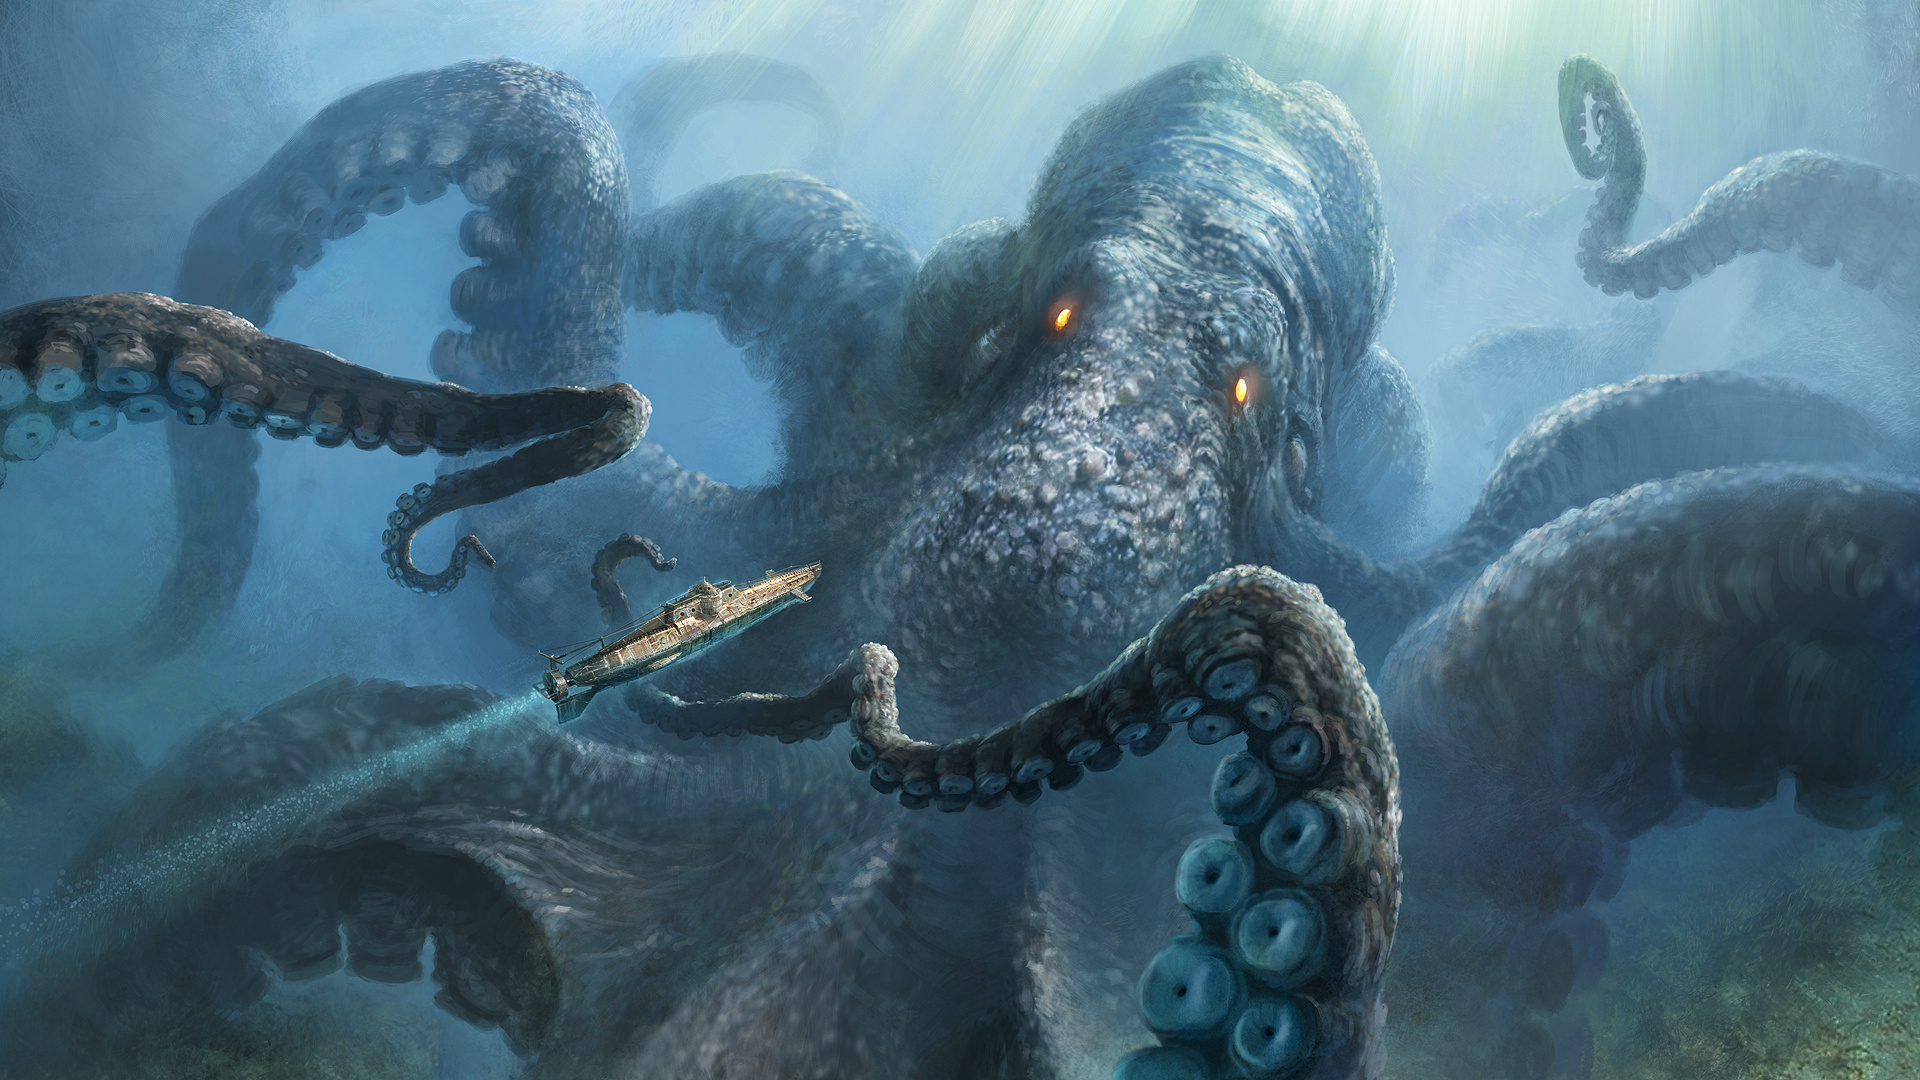 Kraken creature art, Dark fantasy wallpaper, Mysterious sea entity, Mythical monster, 1920x1080 Full HD Desktop